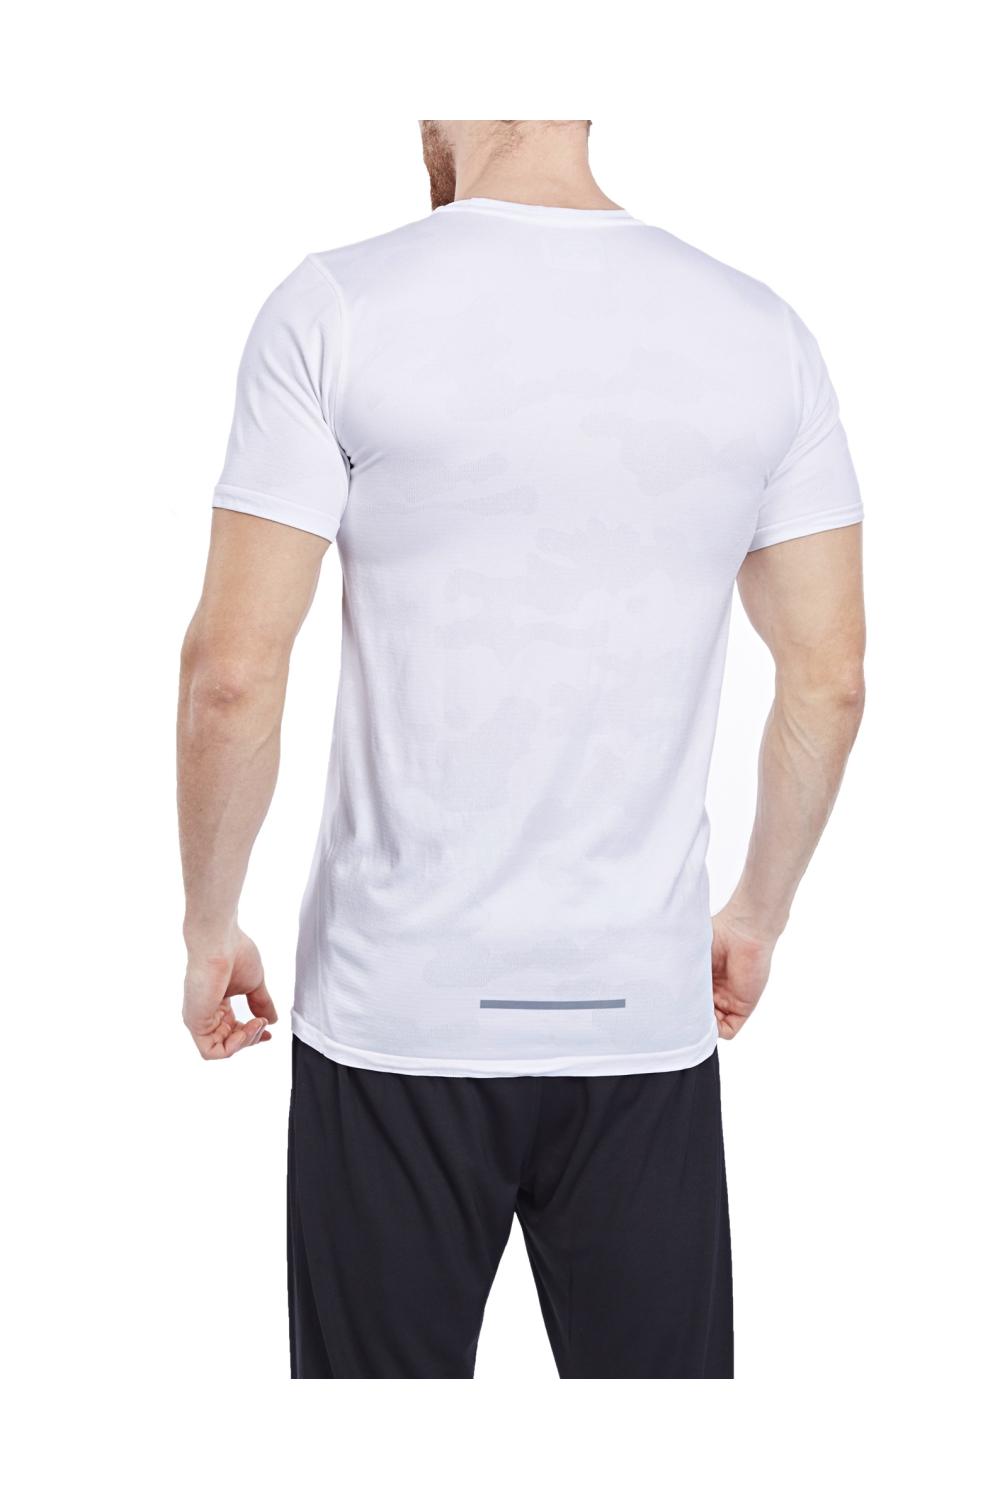 تی شرت ورزشی سفید مردانه لسکون